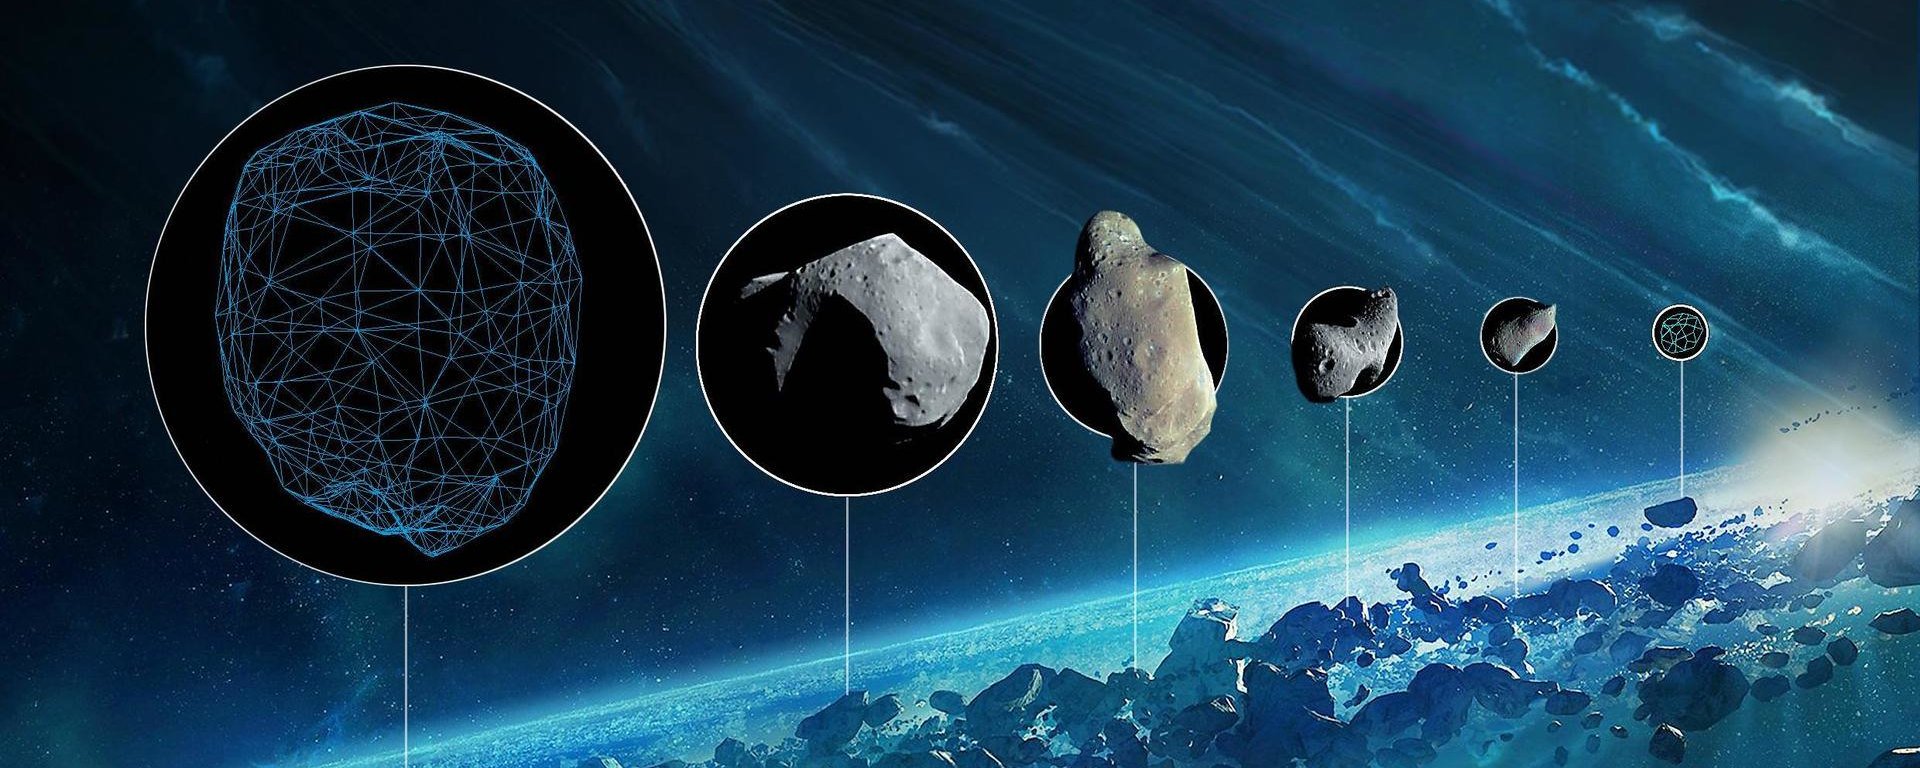 Якщо ви не знали: у чому різниця між кометою і астероїдом?